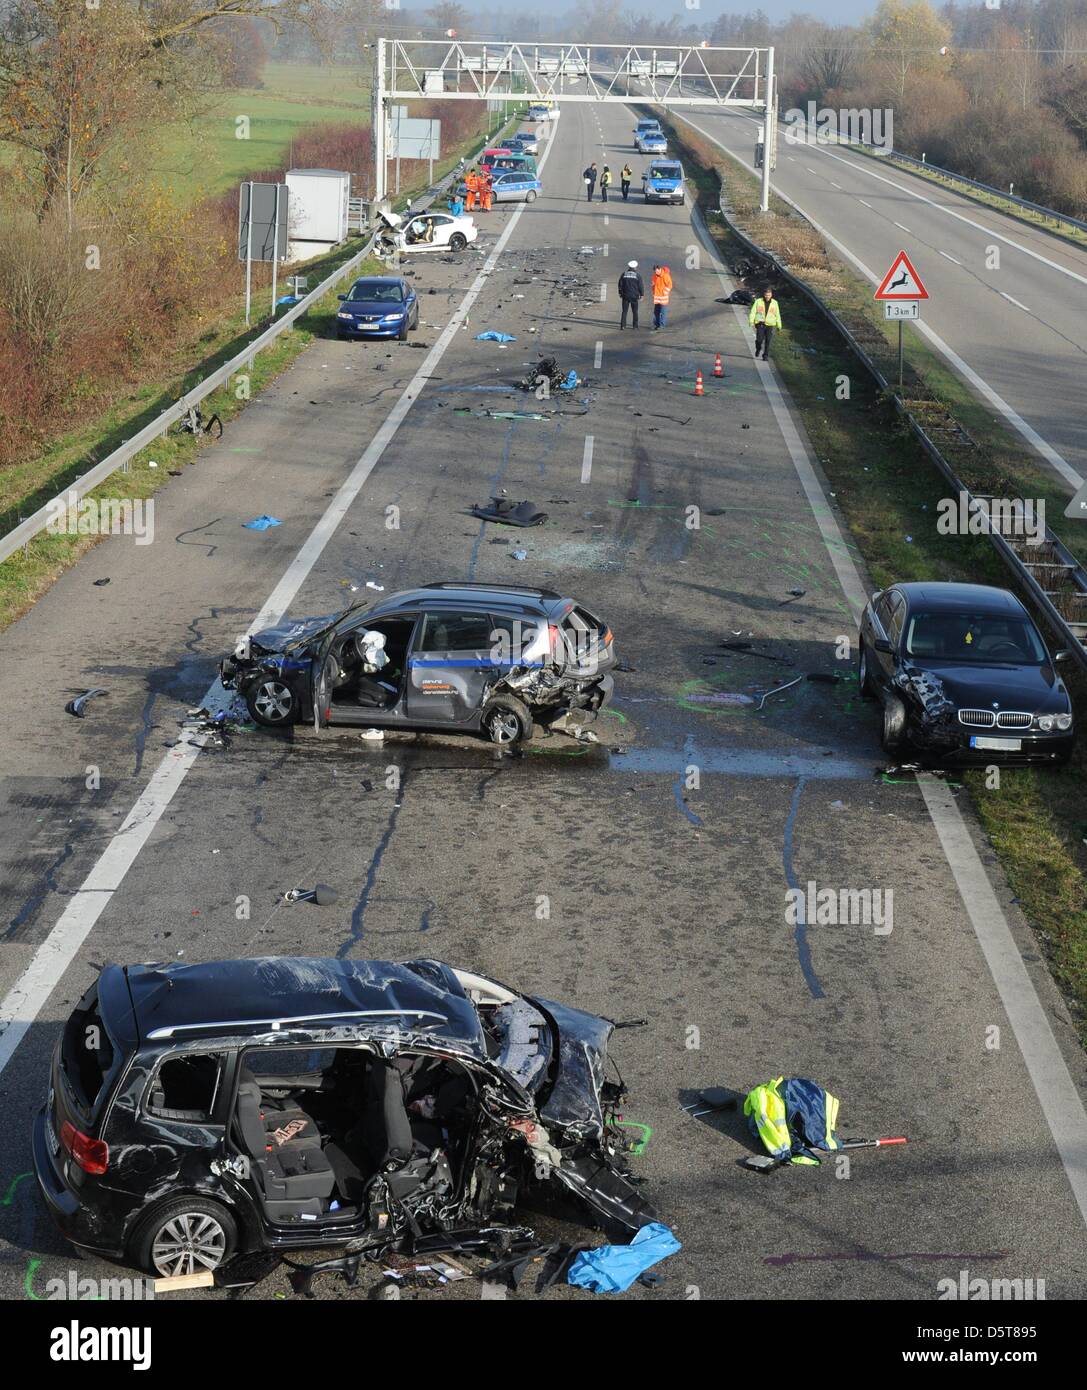 Voir des véhicules impliqués dans un accident sur l'autoroute A5 près d'Offenburg, Allemagne, 18 novembre 2012. Selon la police, six personnes sont mortes dans l'accident causé par un mauvais sens. Photo : PATRICK SEEGER Banque D'Images